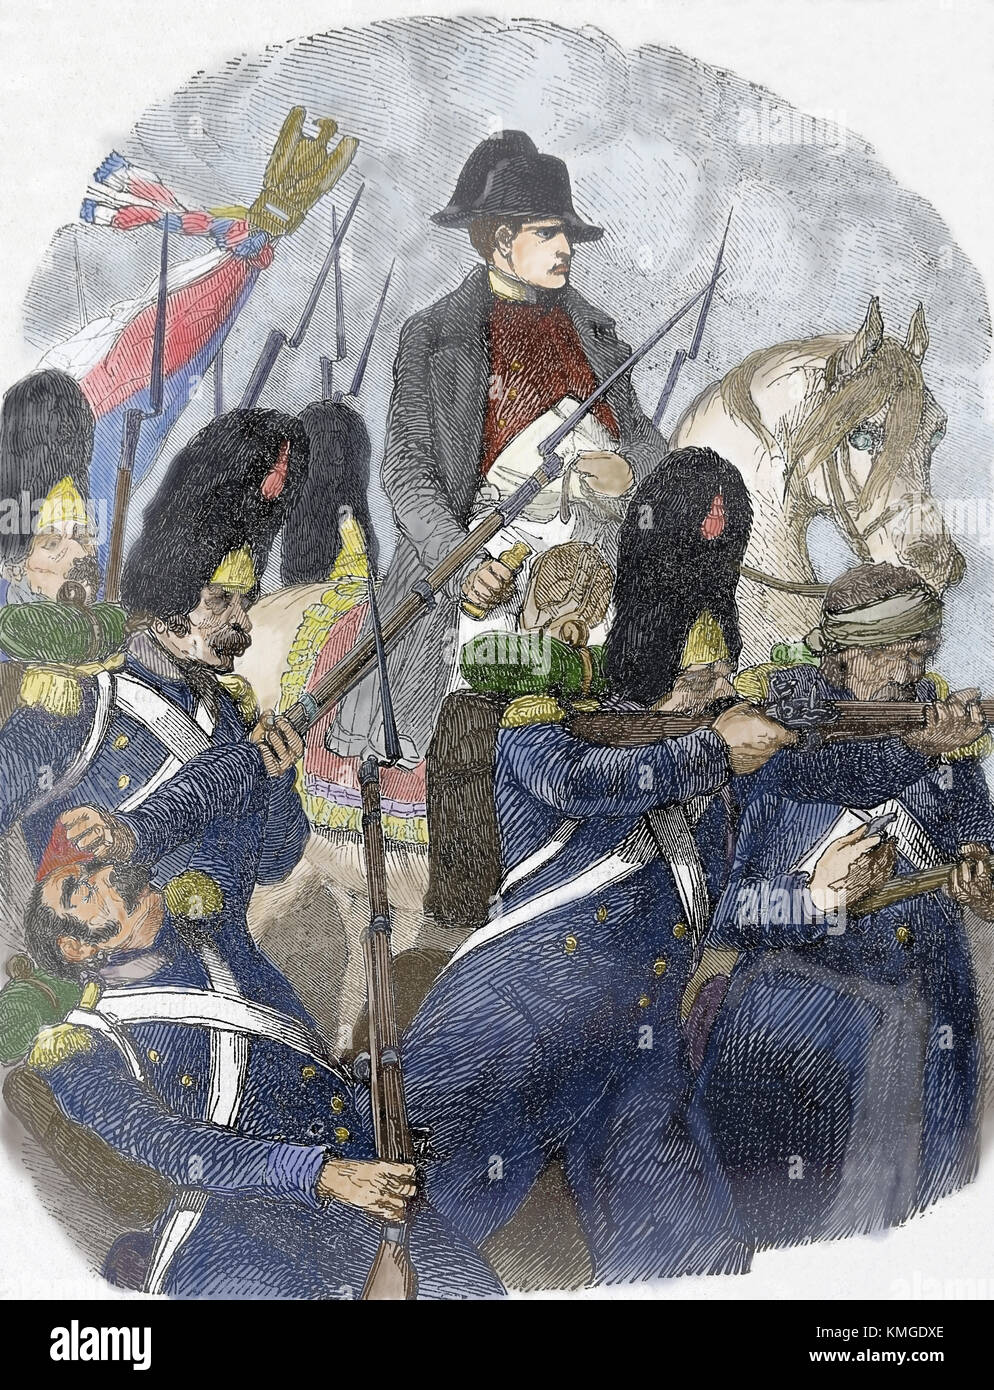 La batalla de Waterloo (18 de junio, 1815). beligerantes: imperio francés y seveth coalición. grabado, del siglo XIX. Foto de stock